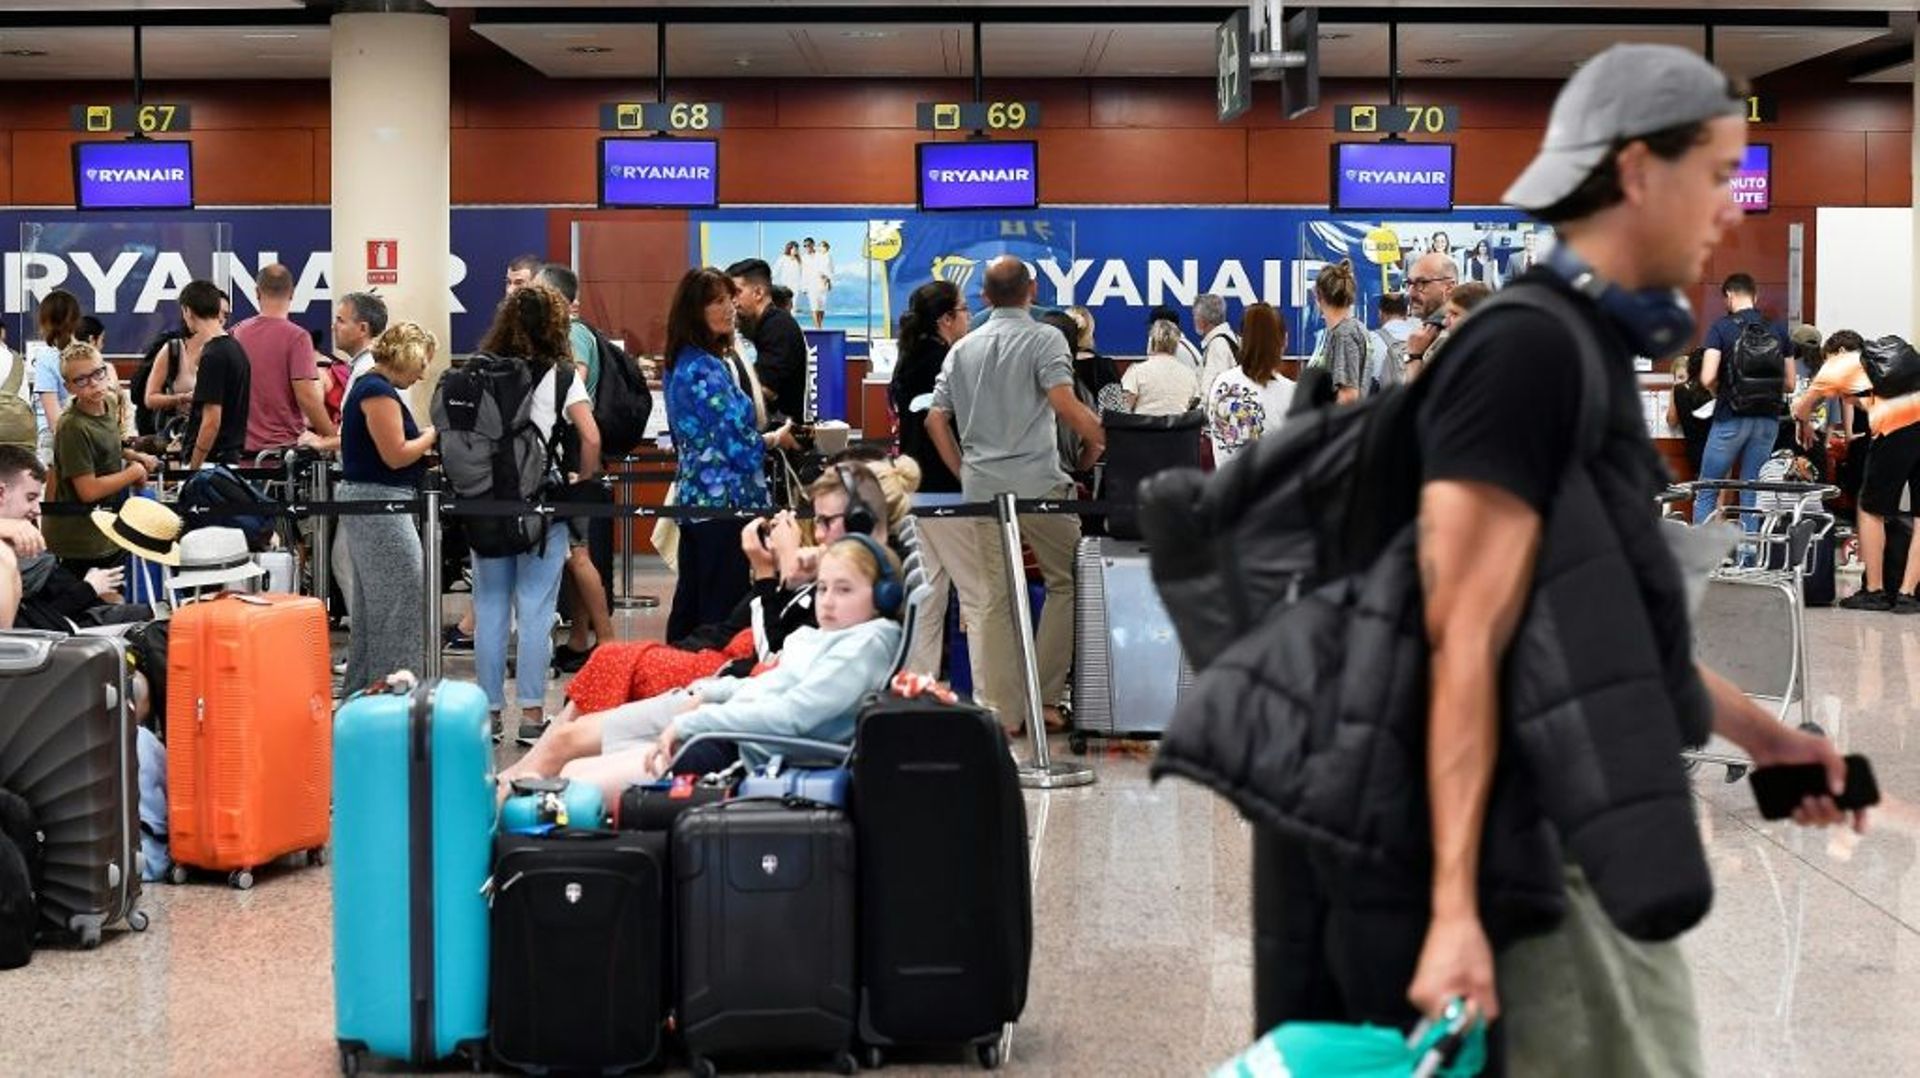 Des voyageurs attendent devant les comptoirs d’enregistrement de la compagnie aérienne Ryanair, le 1er juillet 2022 à Barcelone